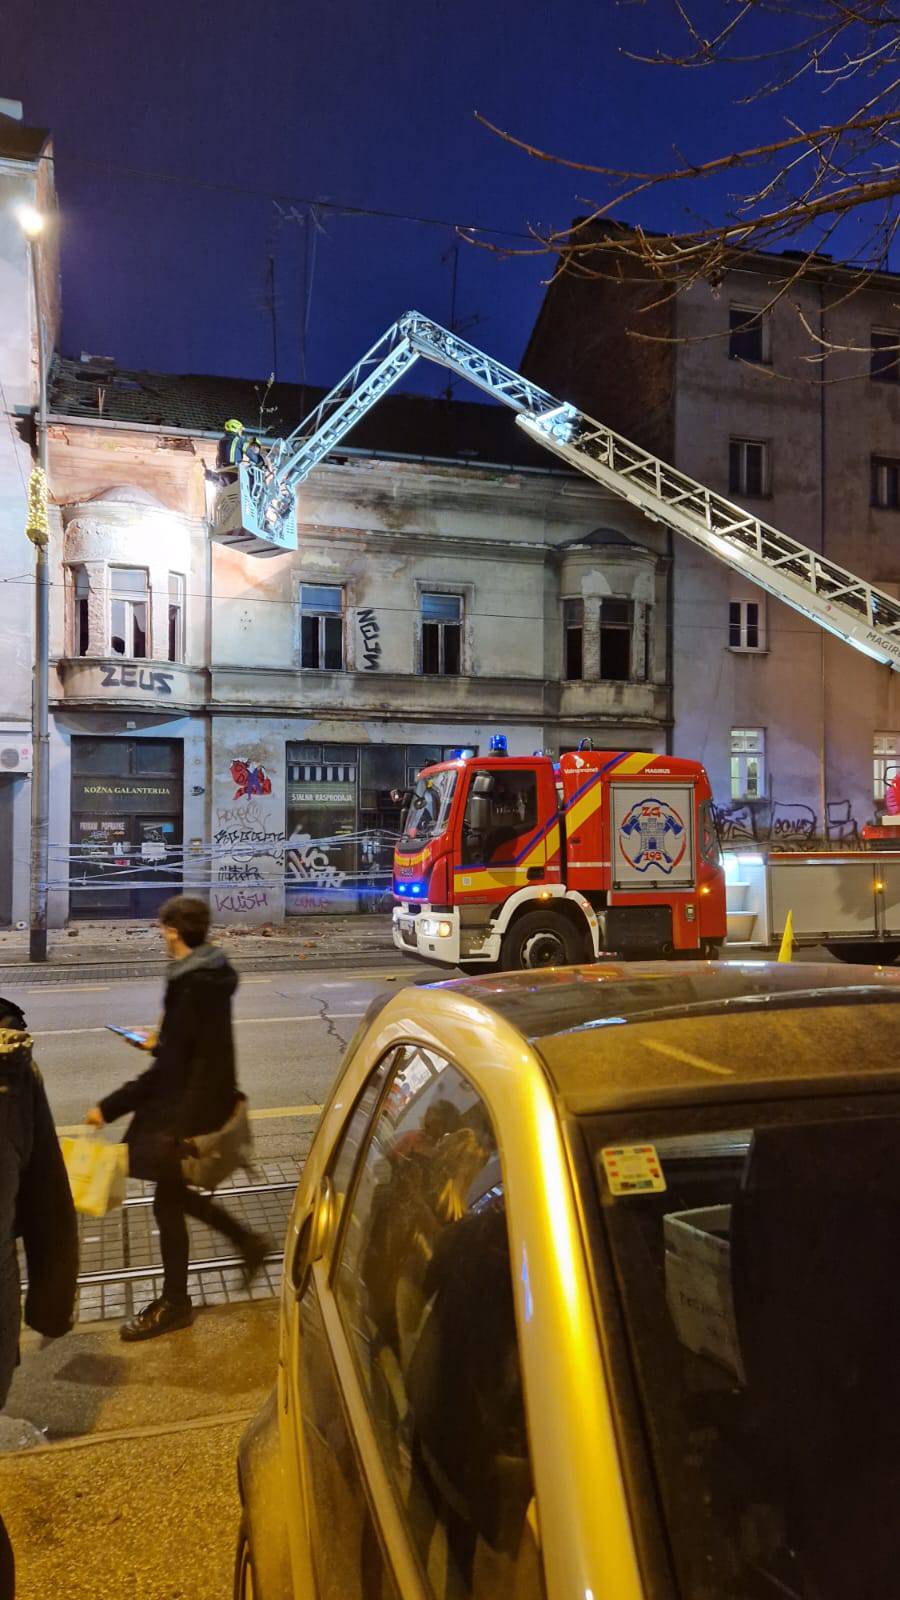 Strava u Maksimirskoj: Pronašli beživotno tijelo u staroj zgradi